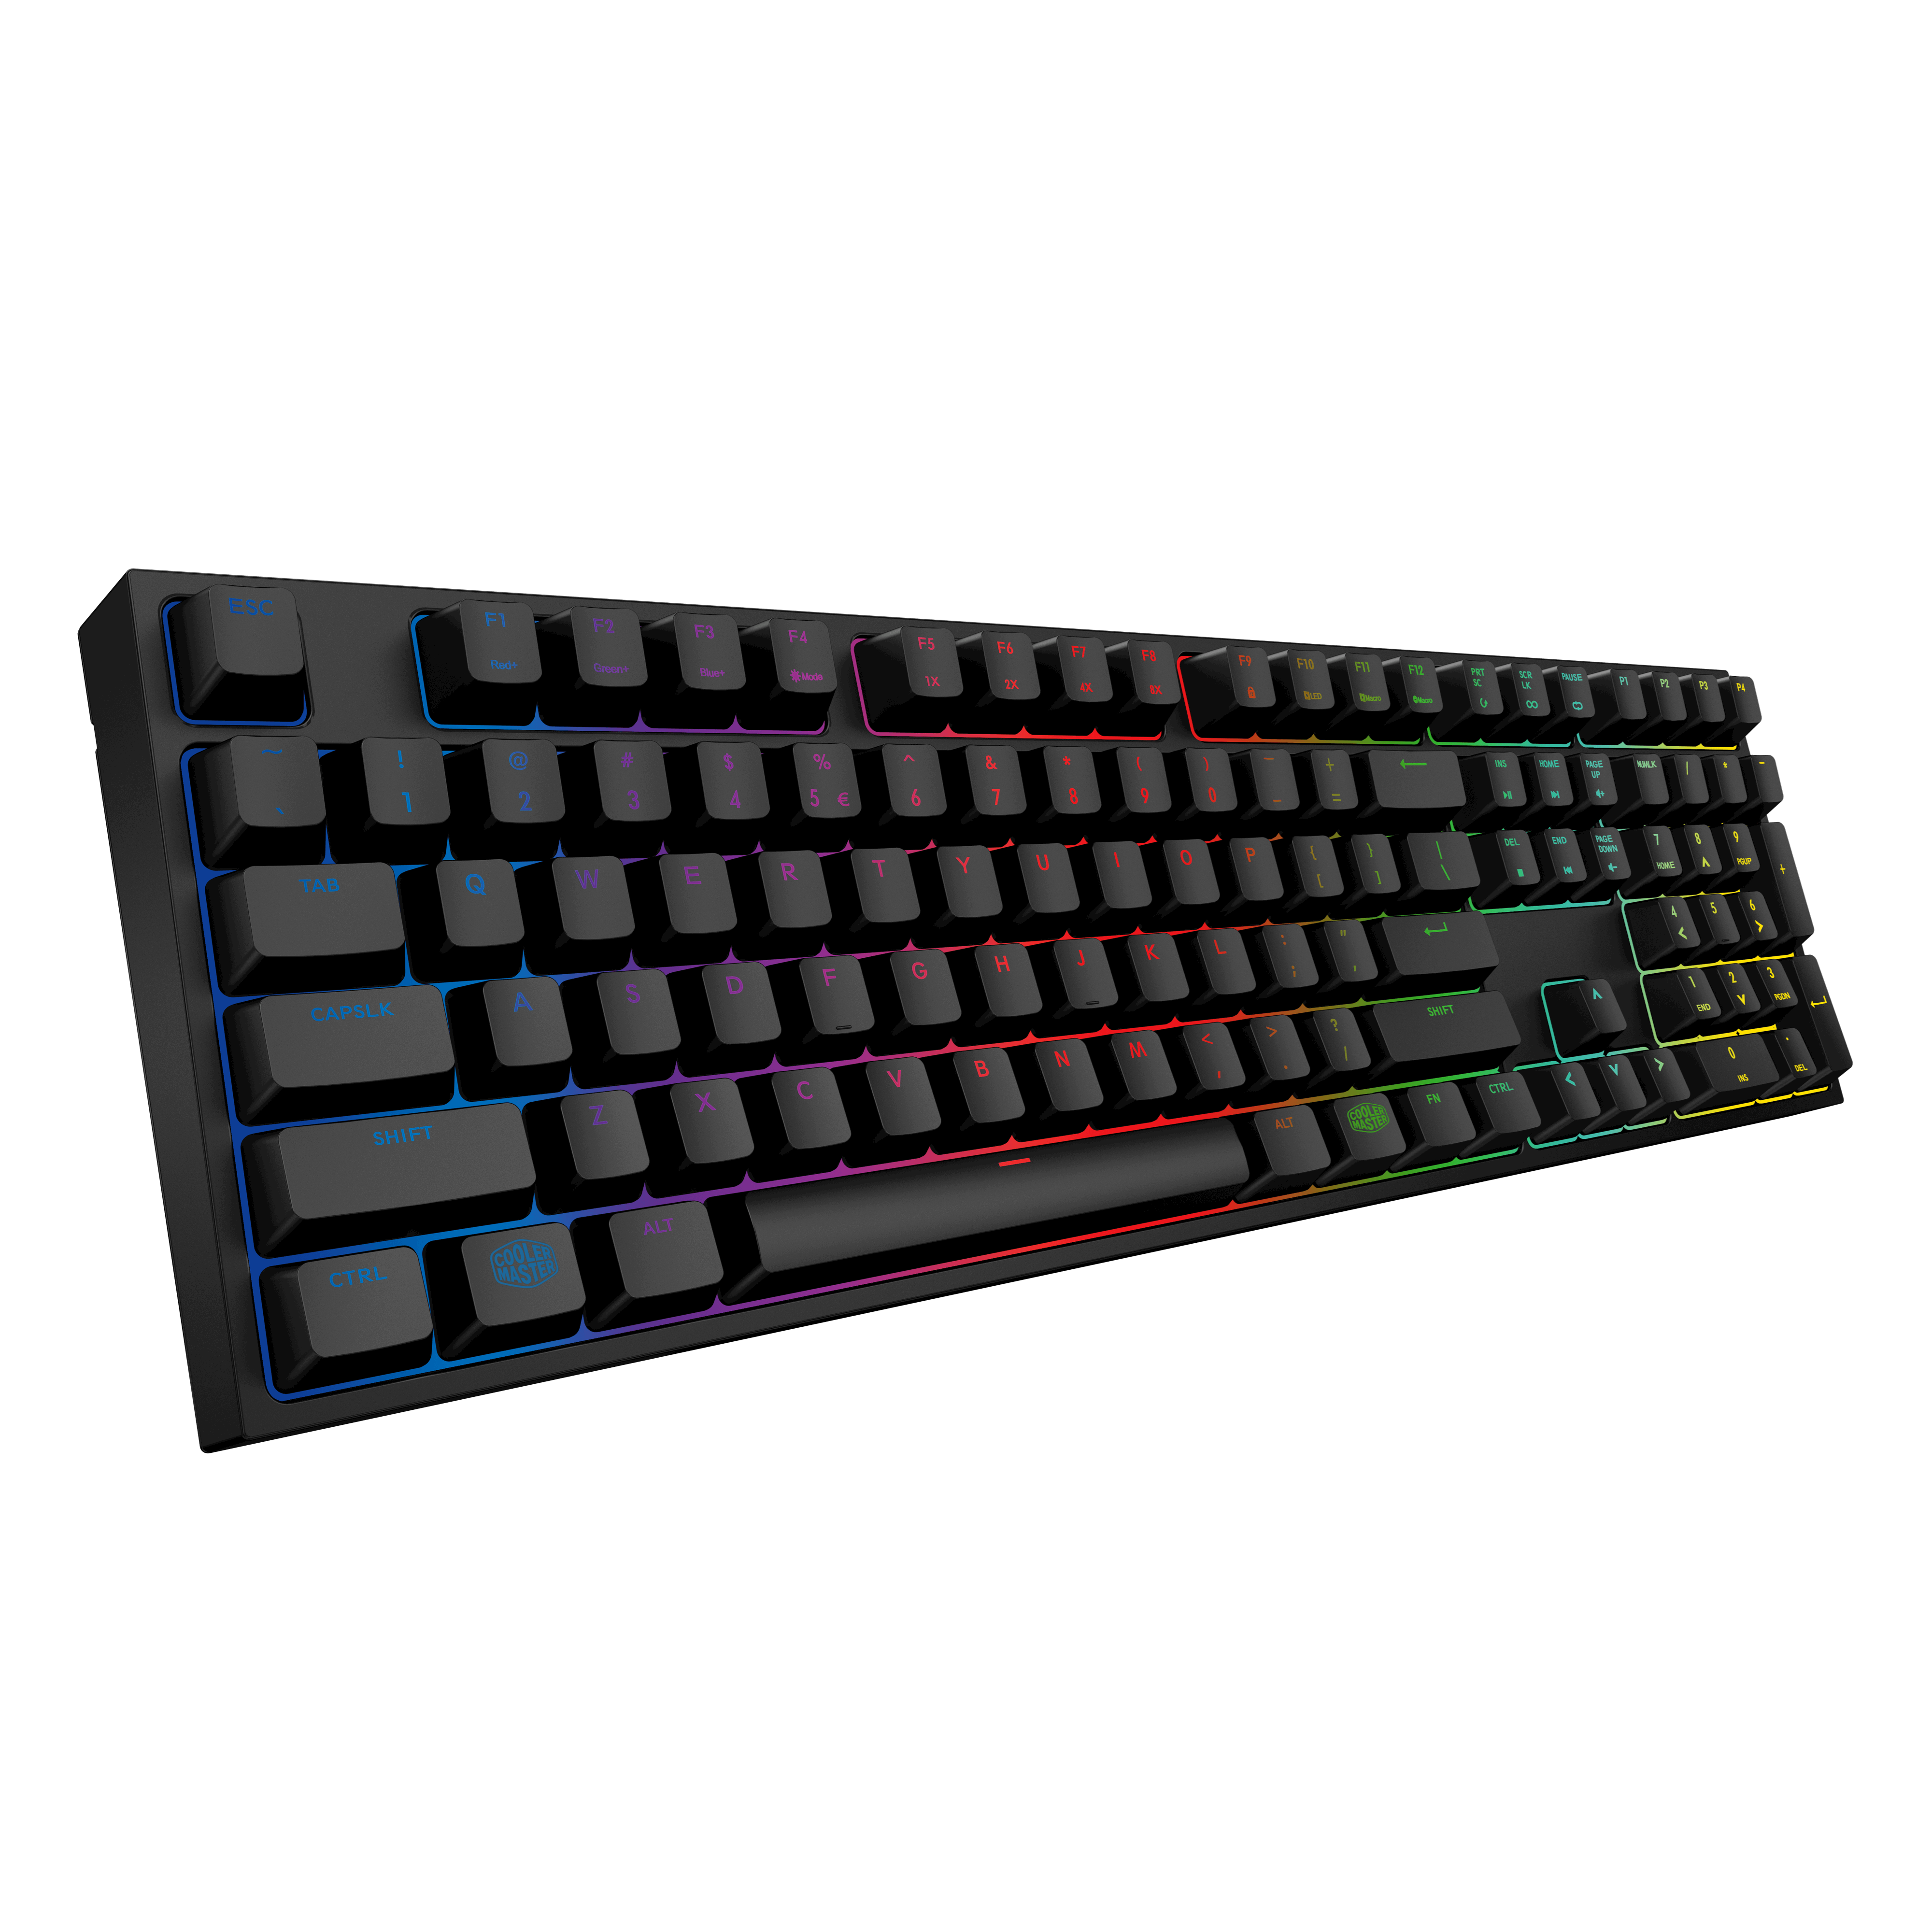 Masterkeys Pro S RGB Mechanical Gaming Keyboard